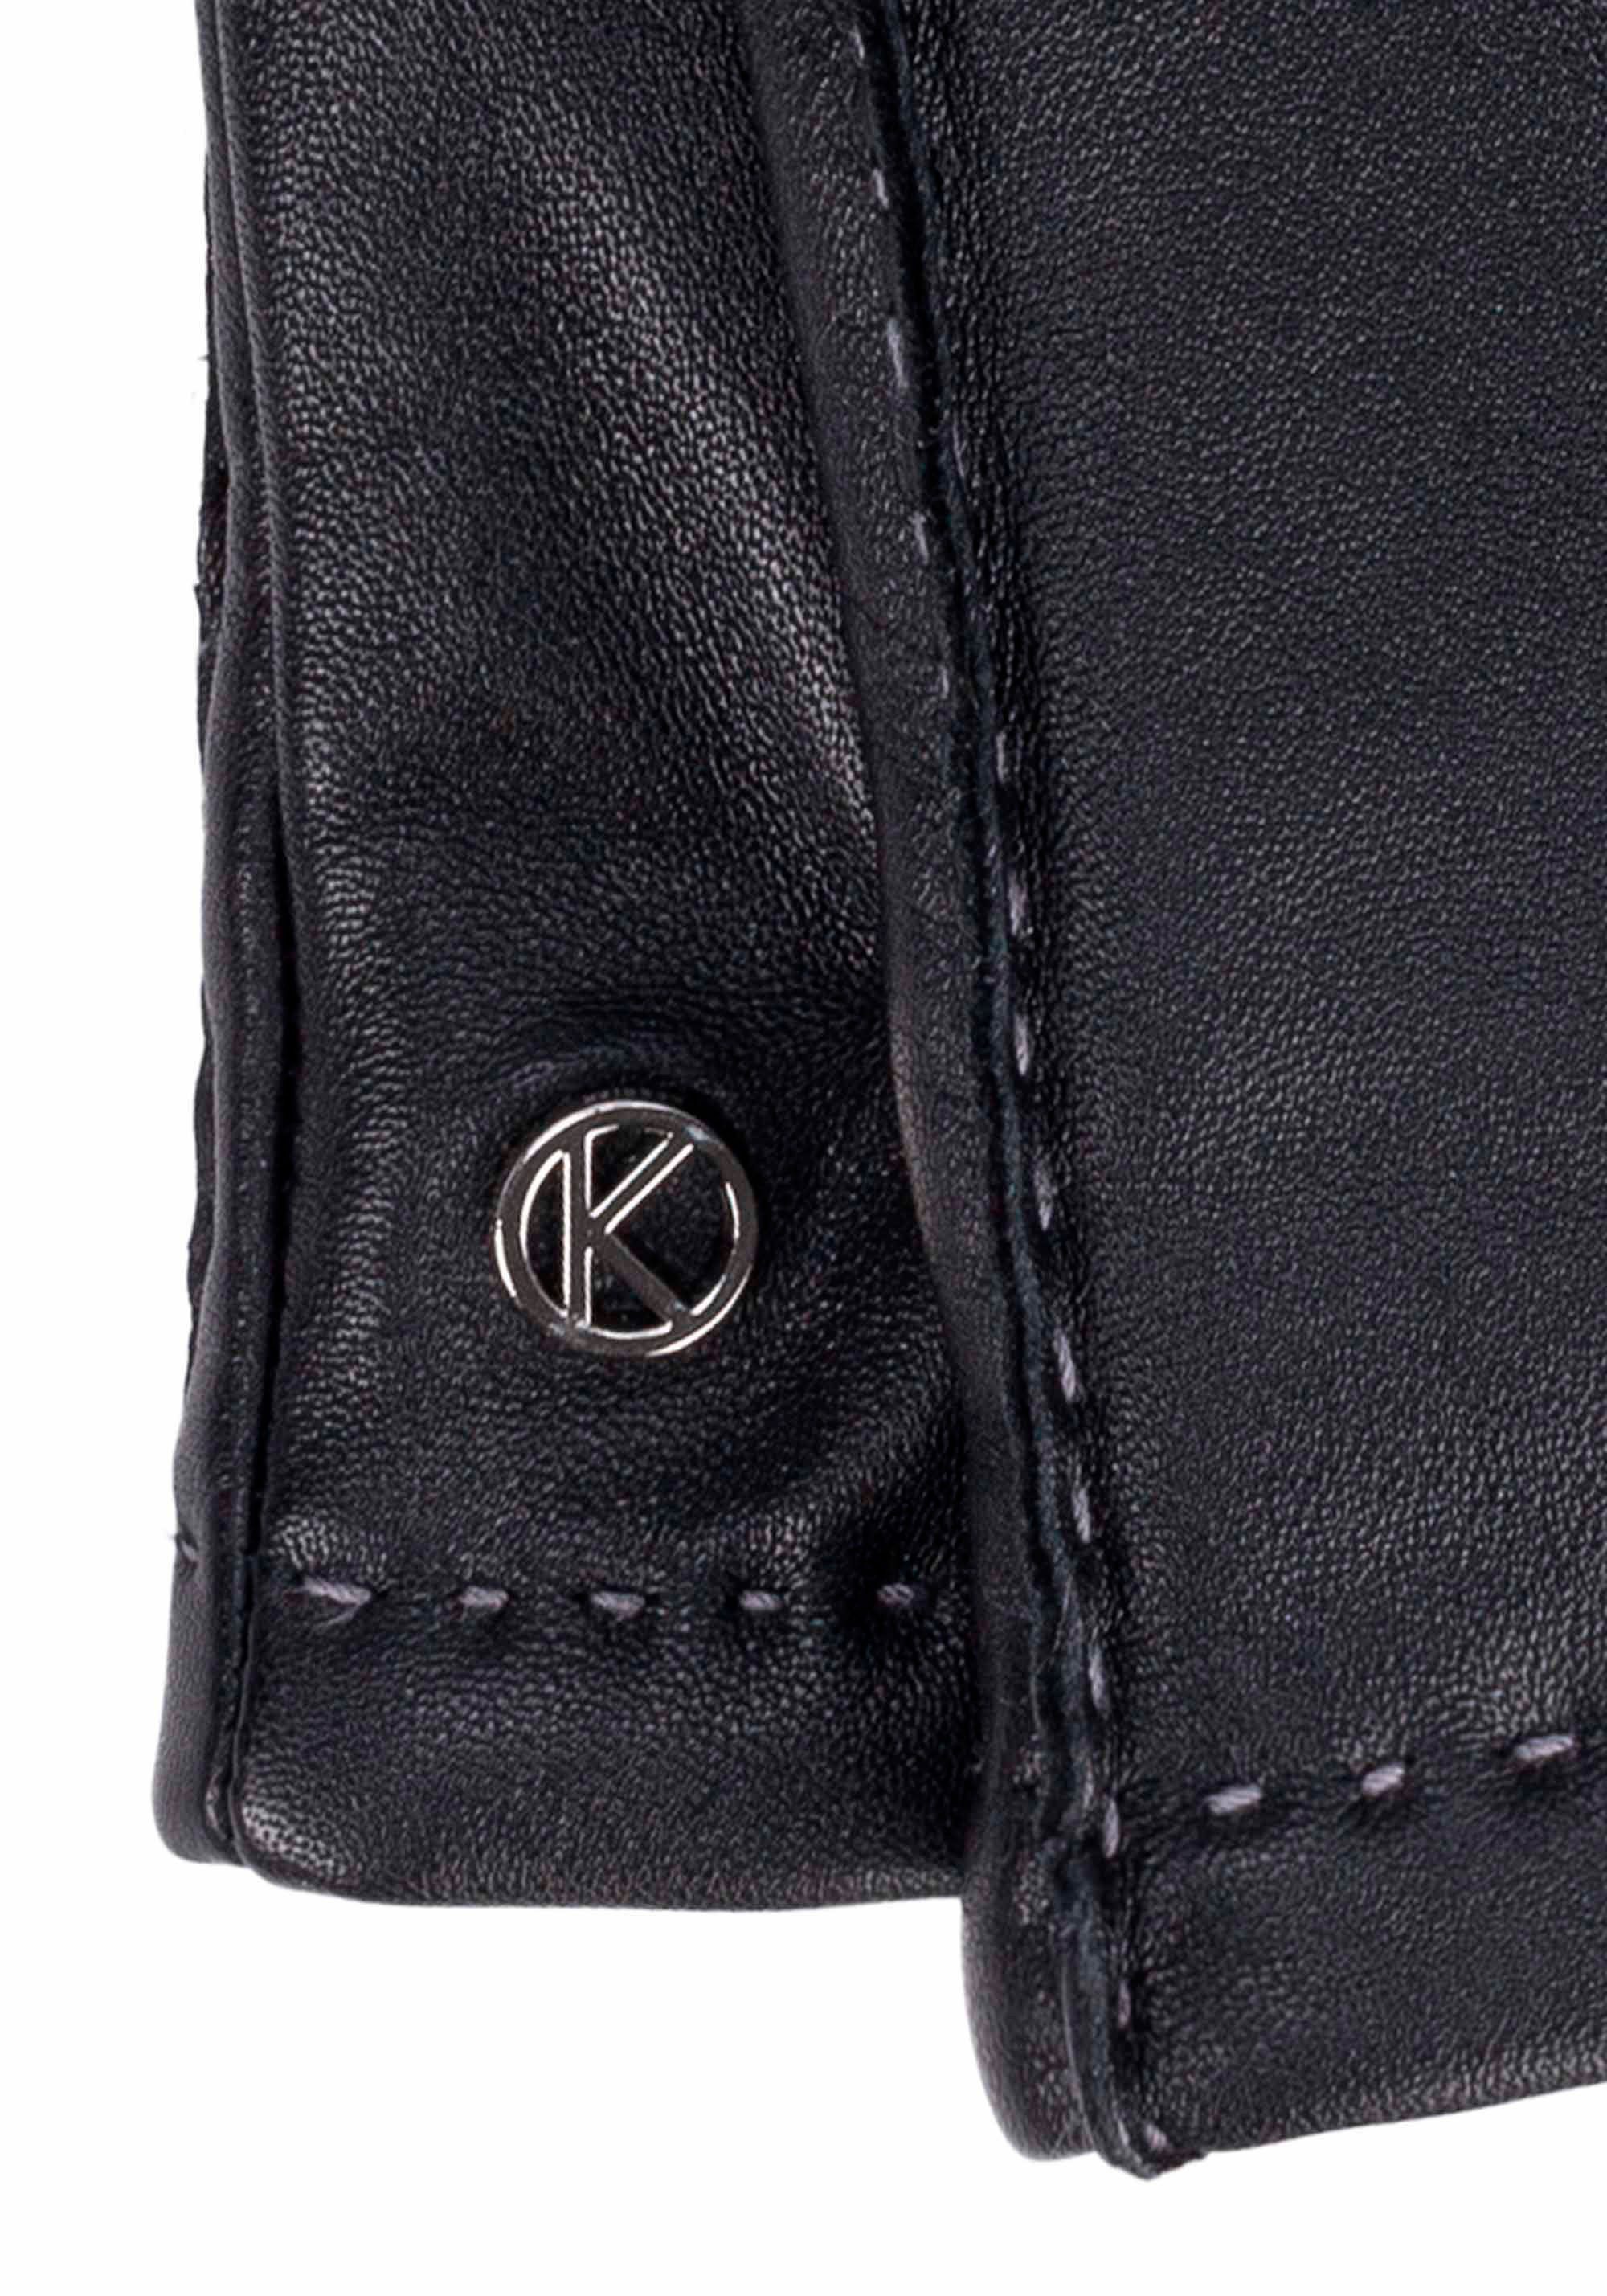 black Oberflächen für Millie KESSLER Lederhandschuhe Touchfunktion Smart-